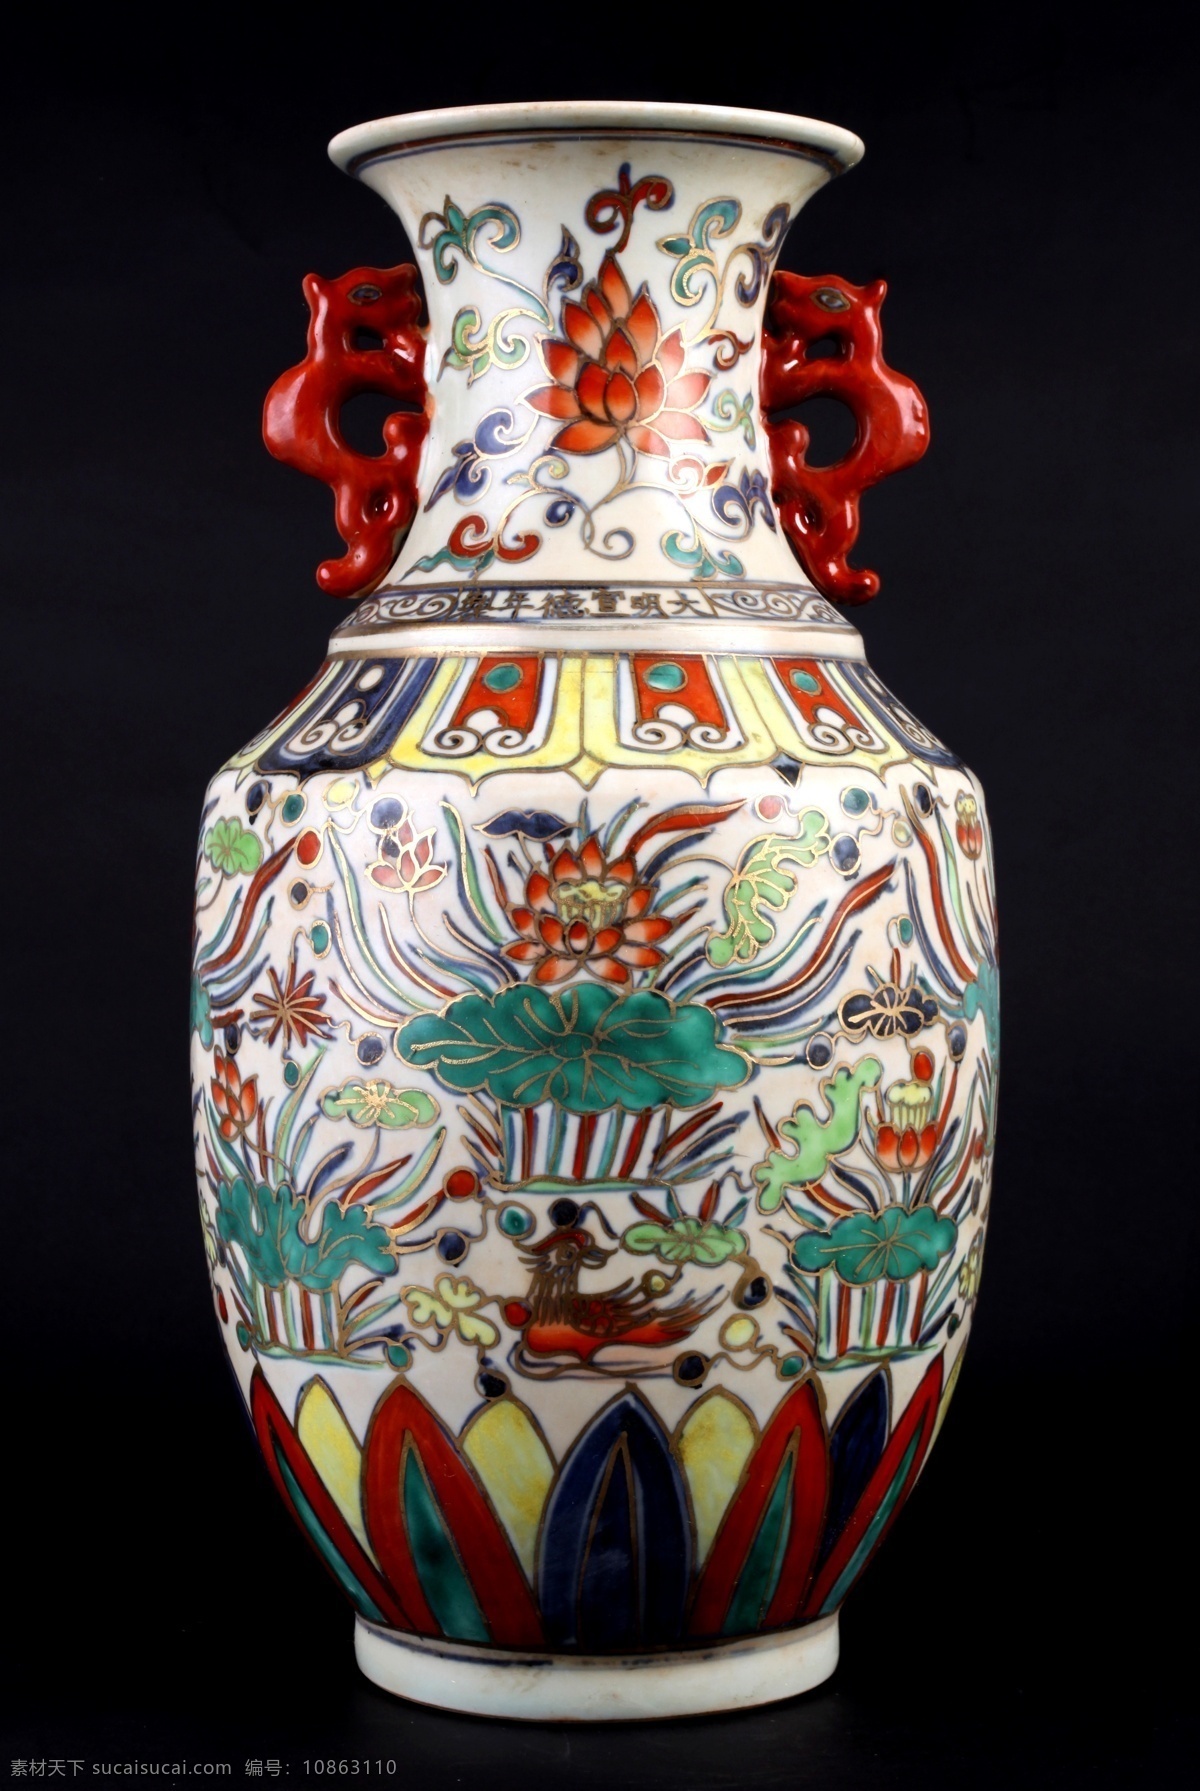 古代 瓷器 双耳 瓶 古玩 双耳瓶 传统文化 文化艺术